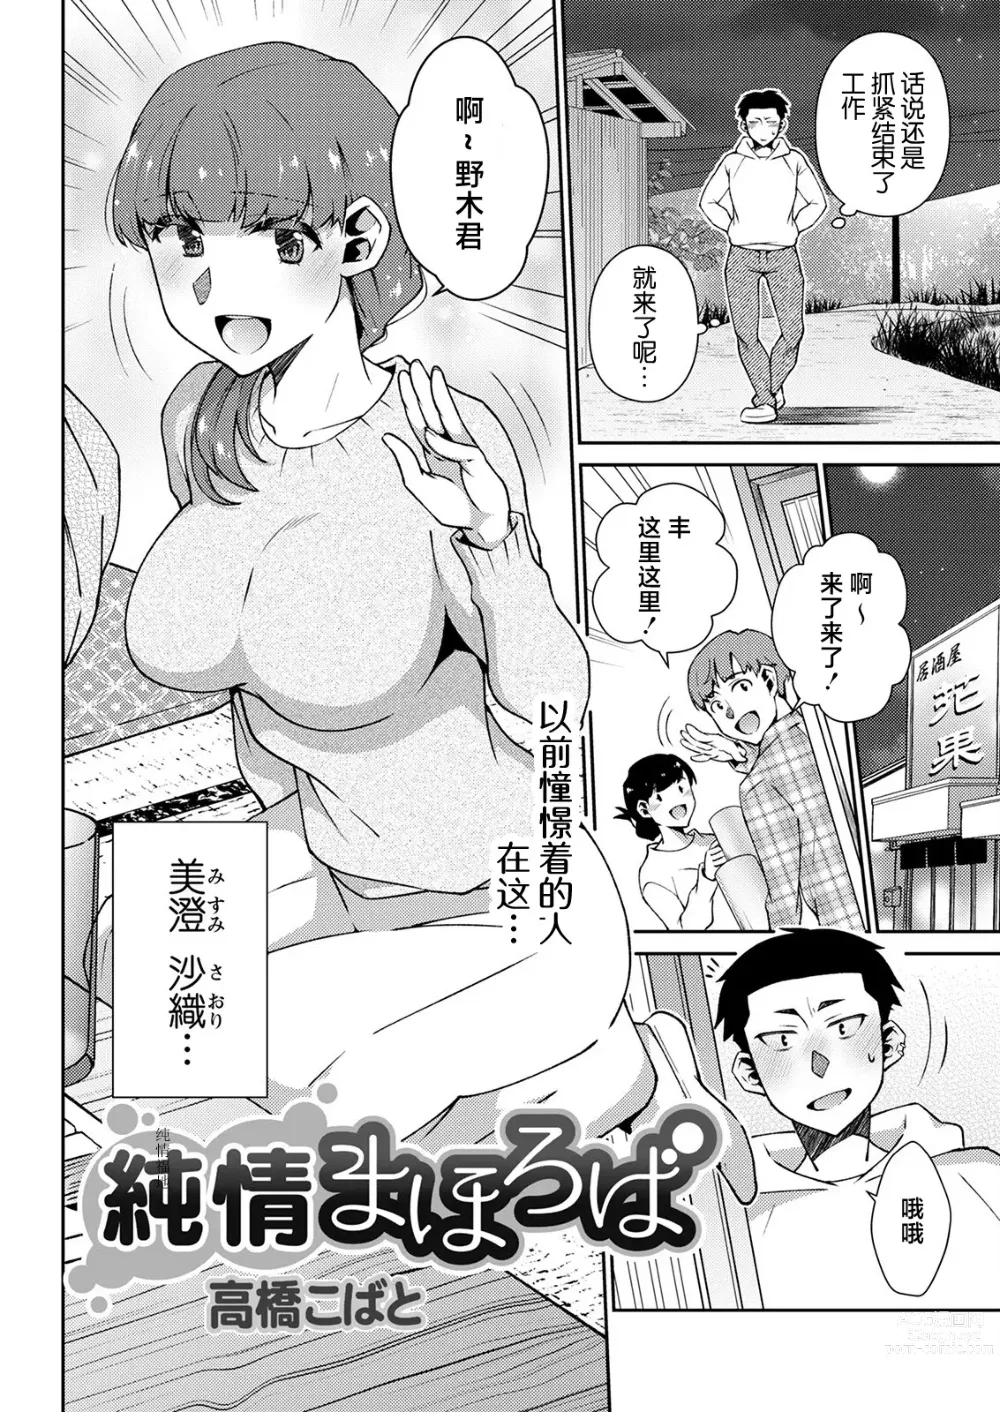 Page 2 of manga Junjou Mahoroba